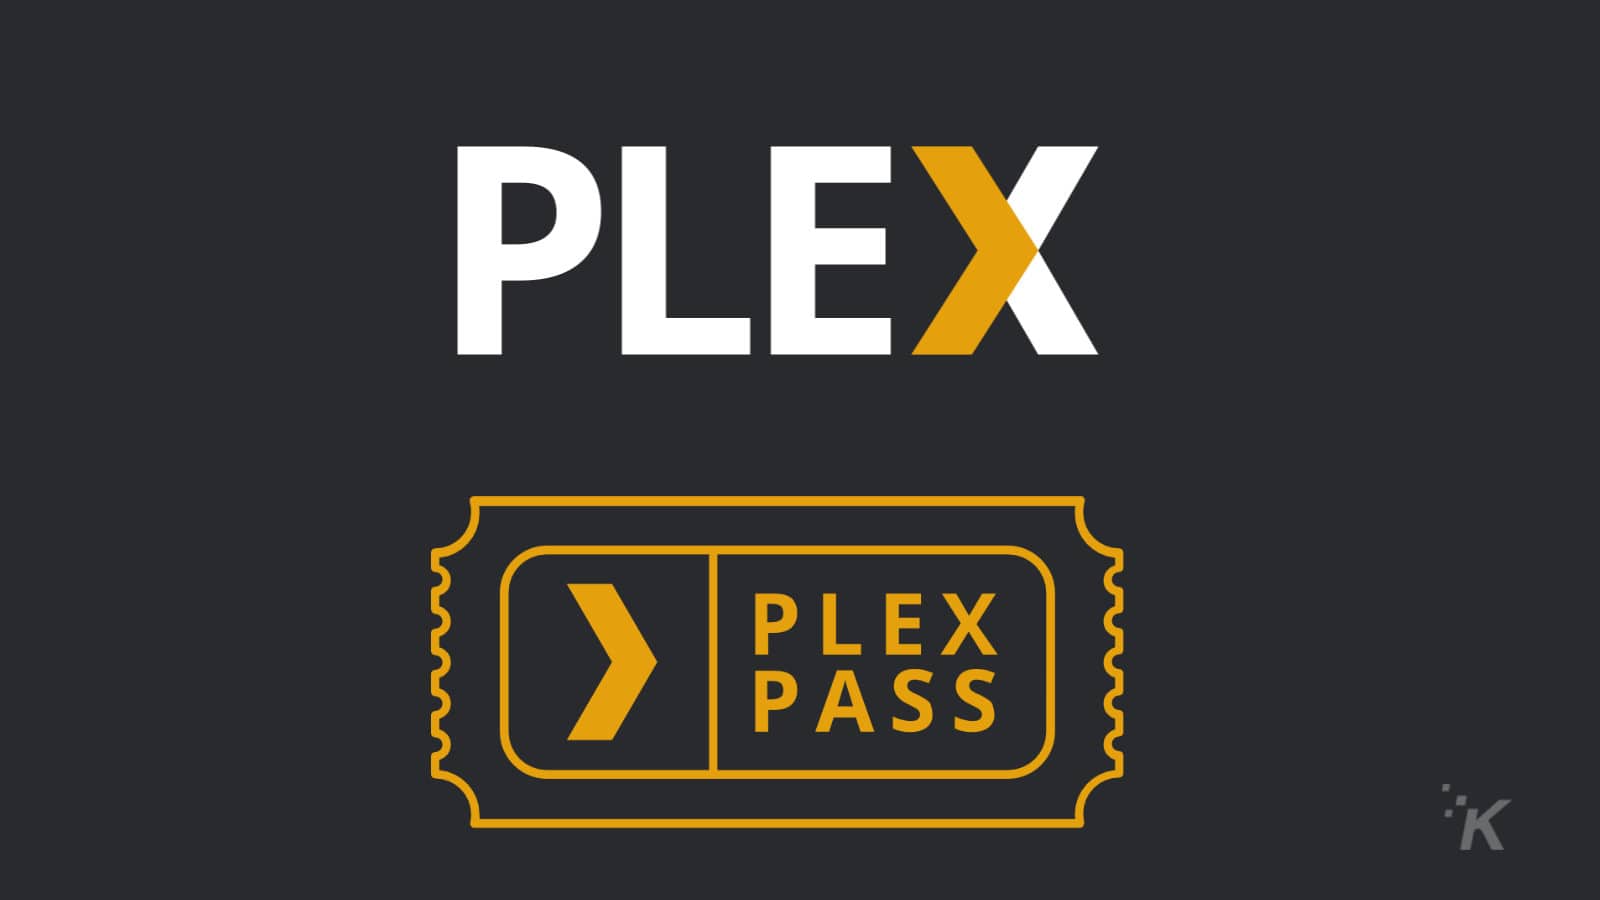 PLEX pass